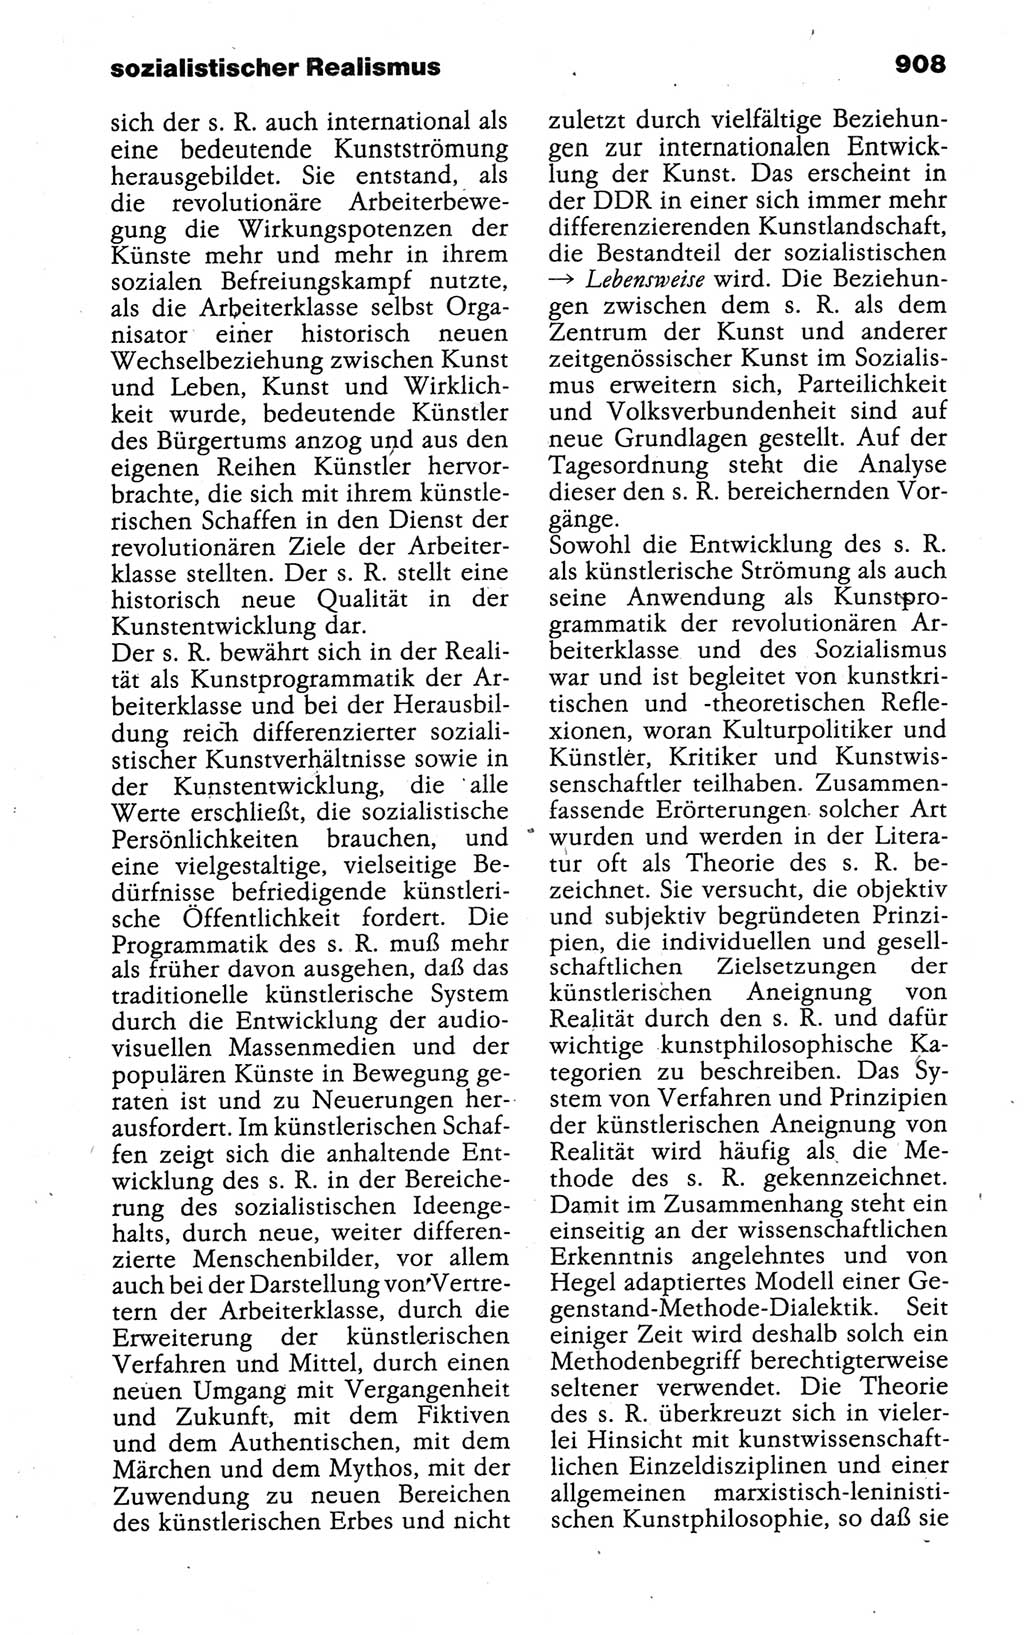 Kleines politisches Wörterbuch [Deutsche Demokratische Republik (DDR)] 1988, Seite 908 (Kl. pol. Wb. DDR 1988, S. 908)